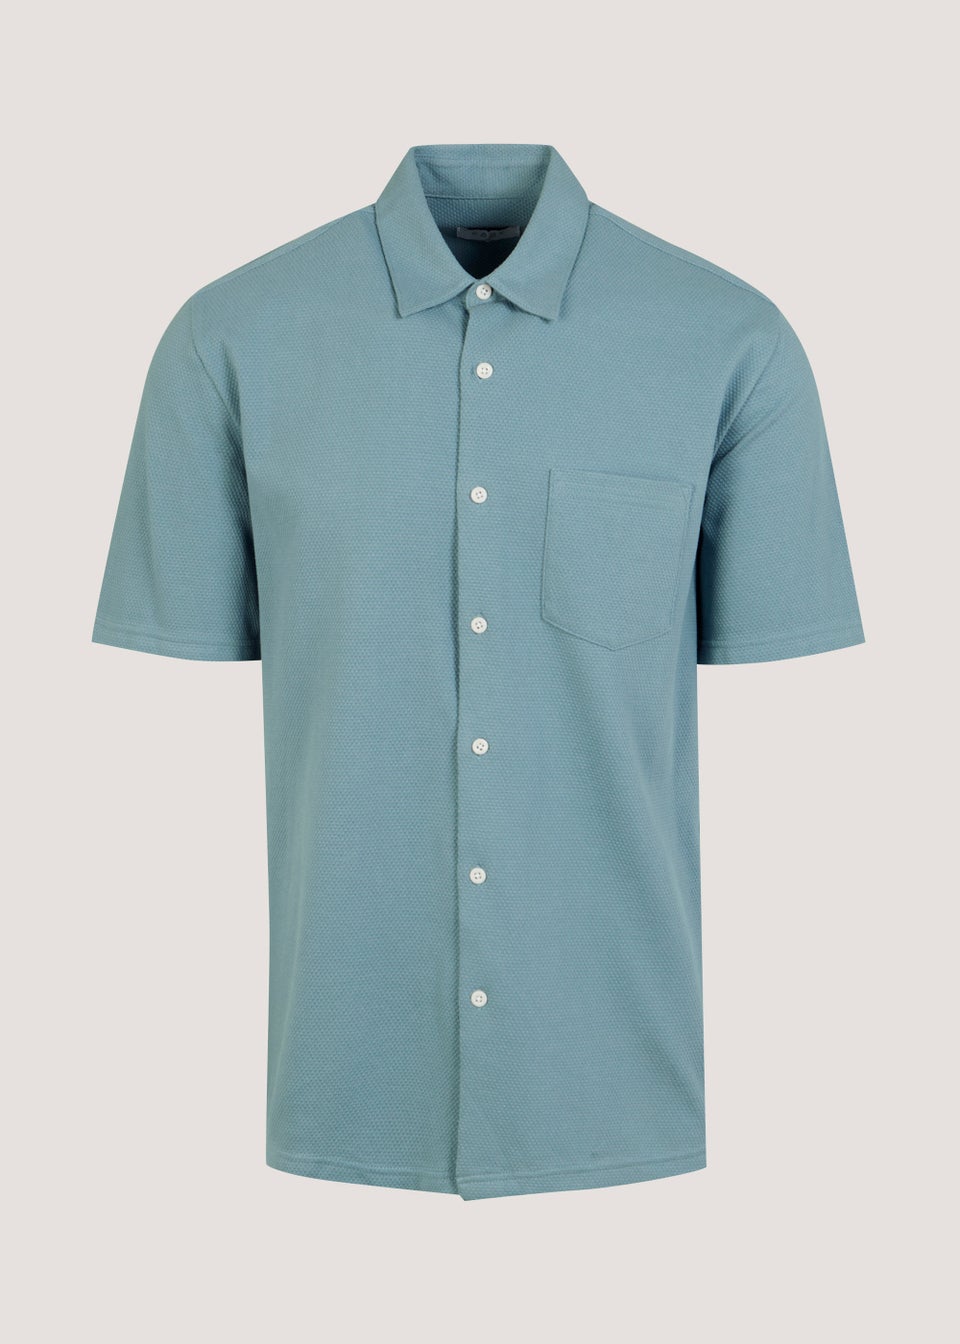 Blue Textured Jersey Short Sleeve Shirt - Matalan